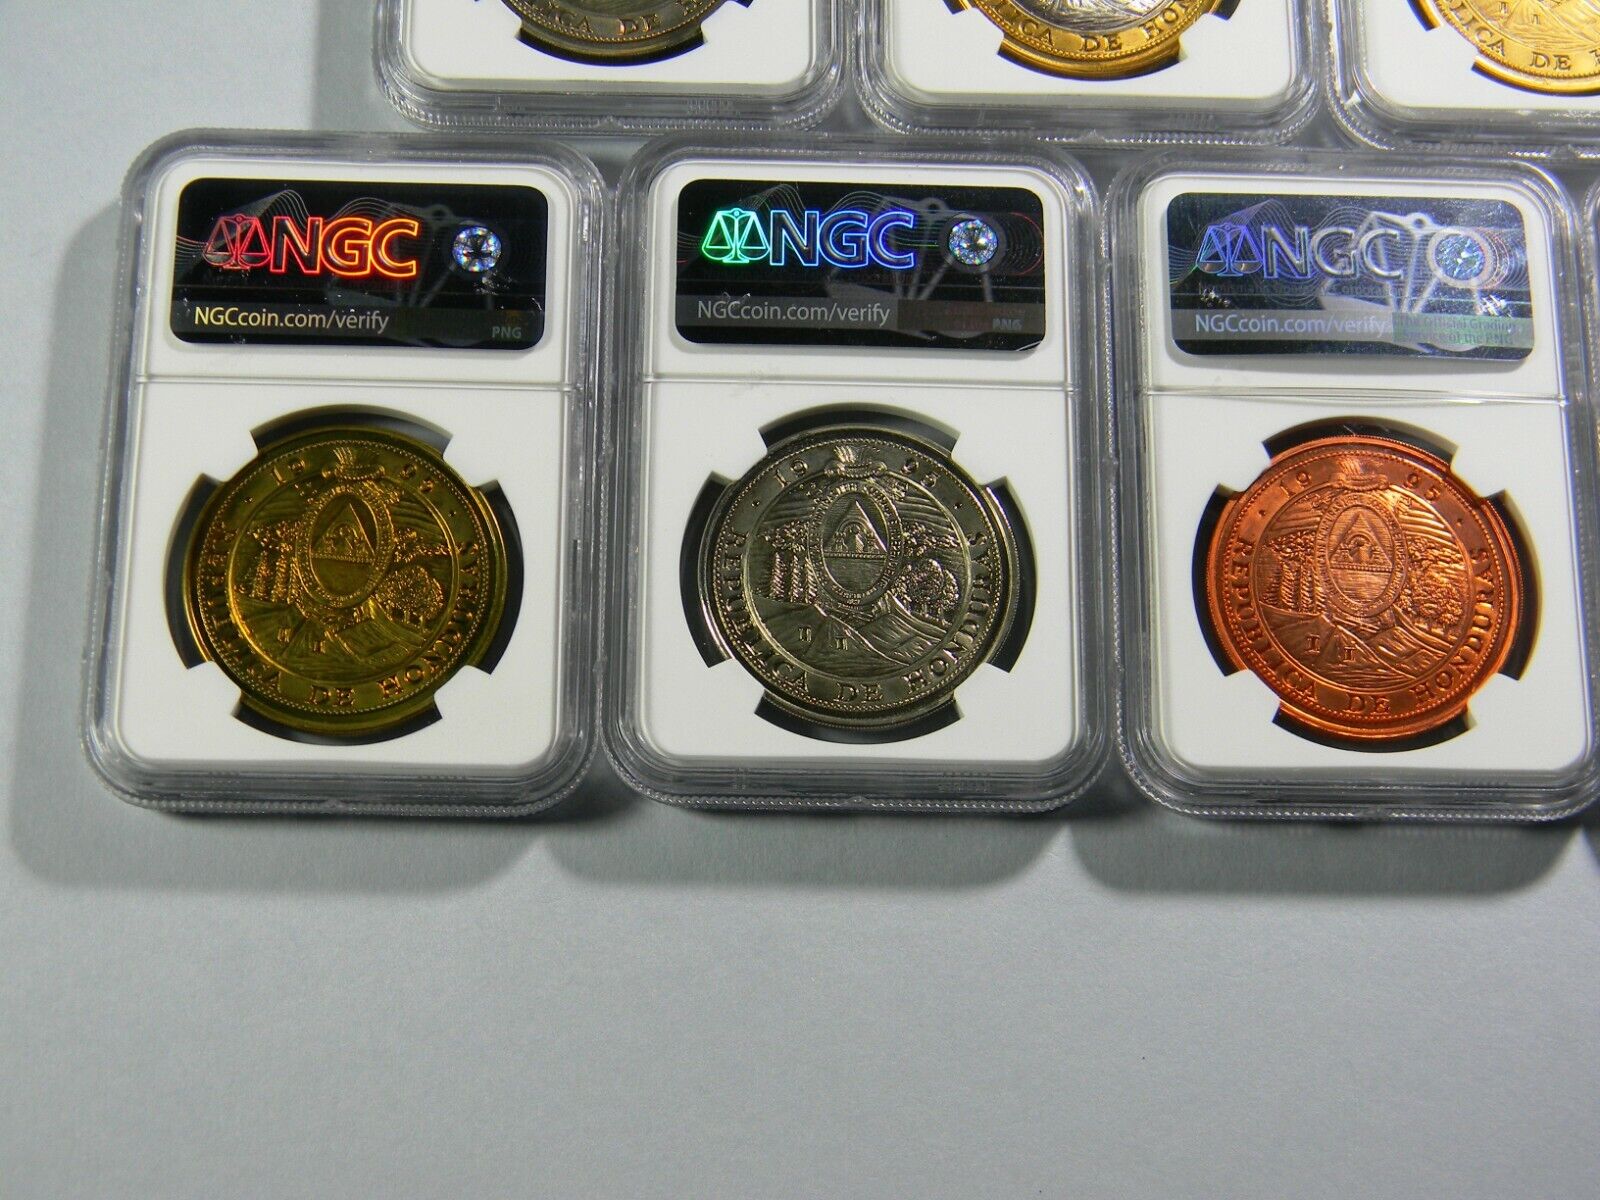 1995 Honduras 10 Lempiras 7 coin Lot NGC Certified  Без бренда - фотография #8